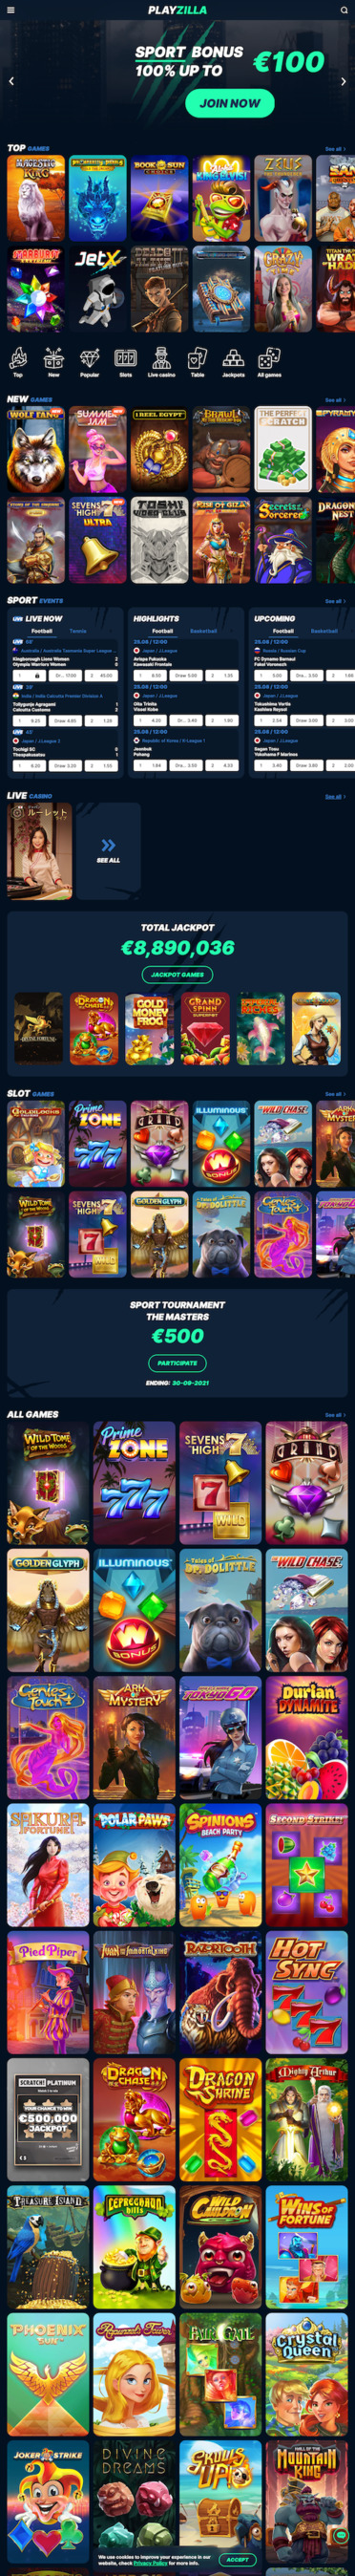 Screen strony głównej kasyna PlayZilla